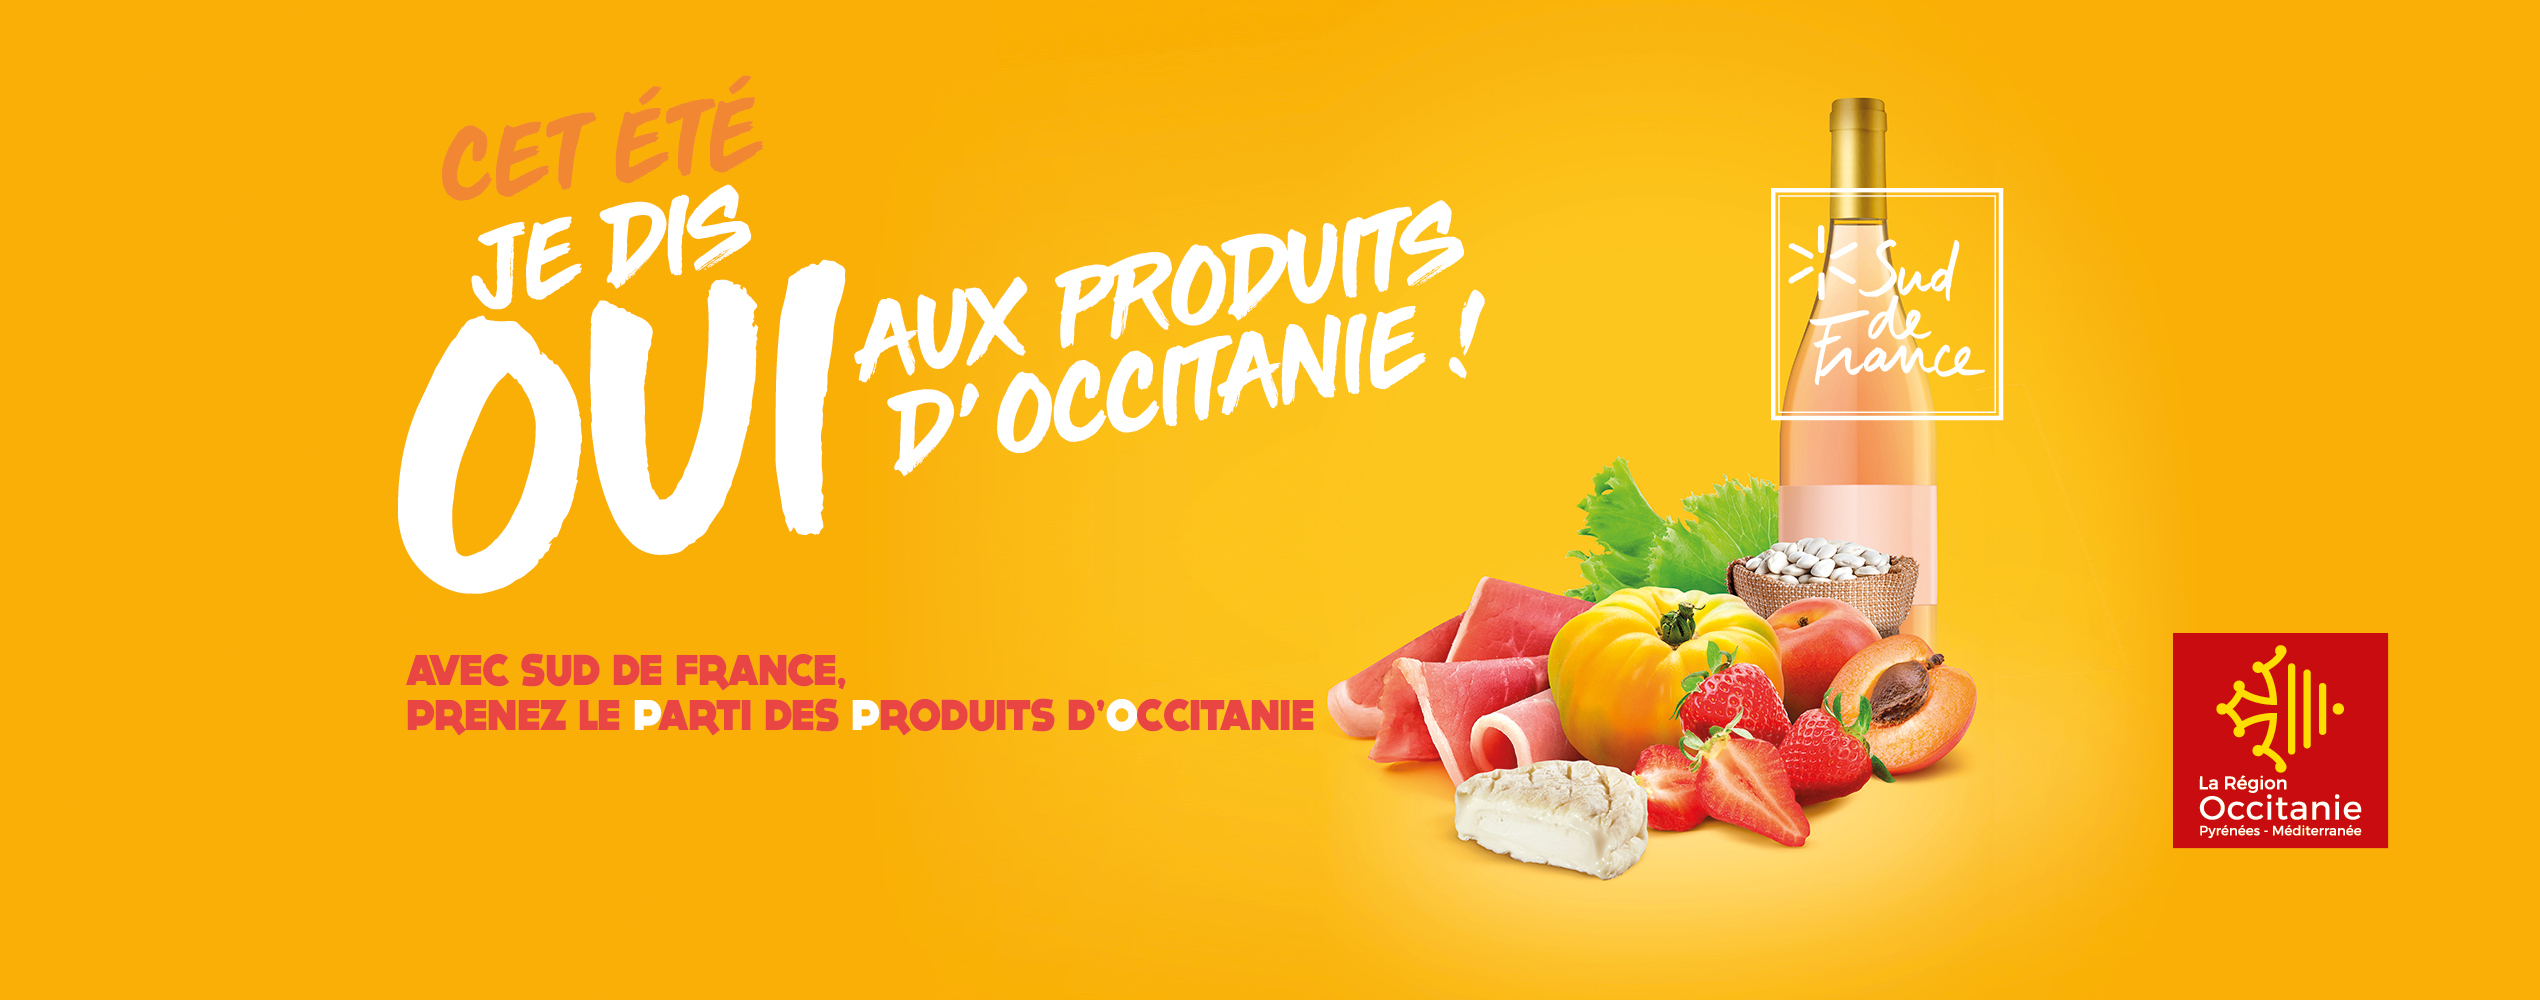 Cet été, je dis oui aux produits d’Occitanie !